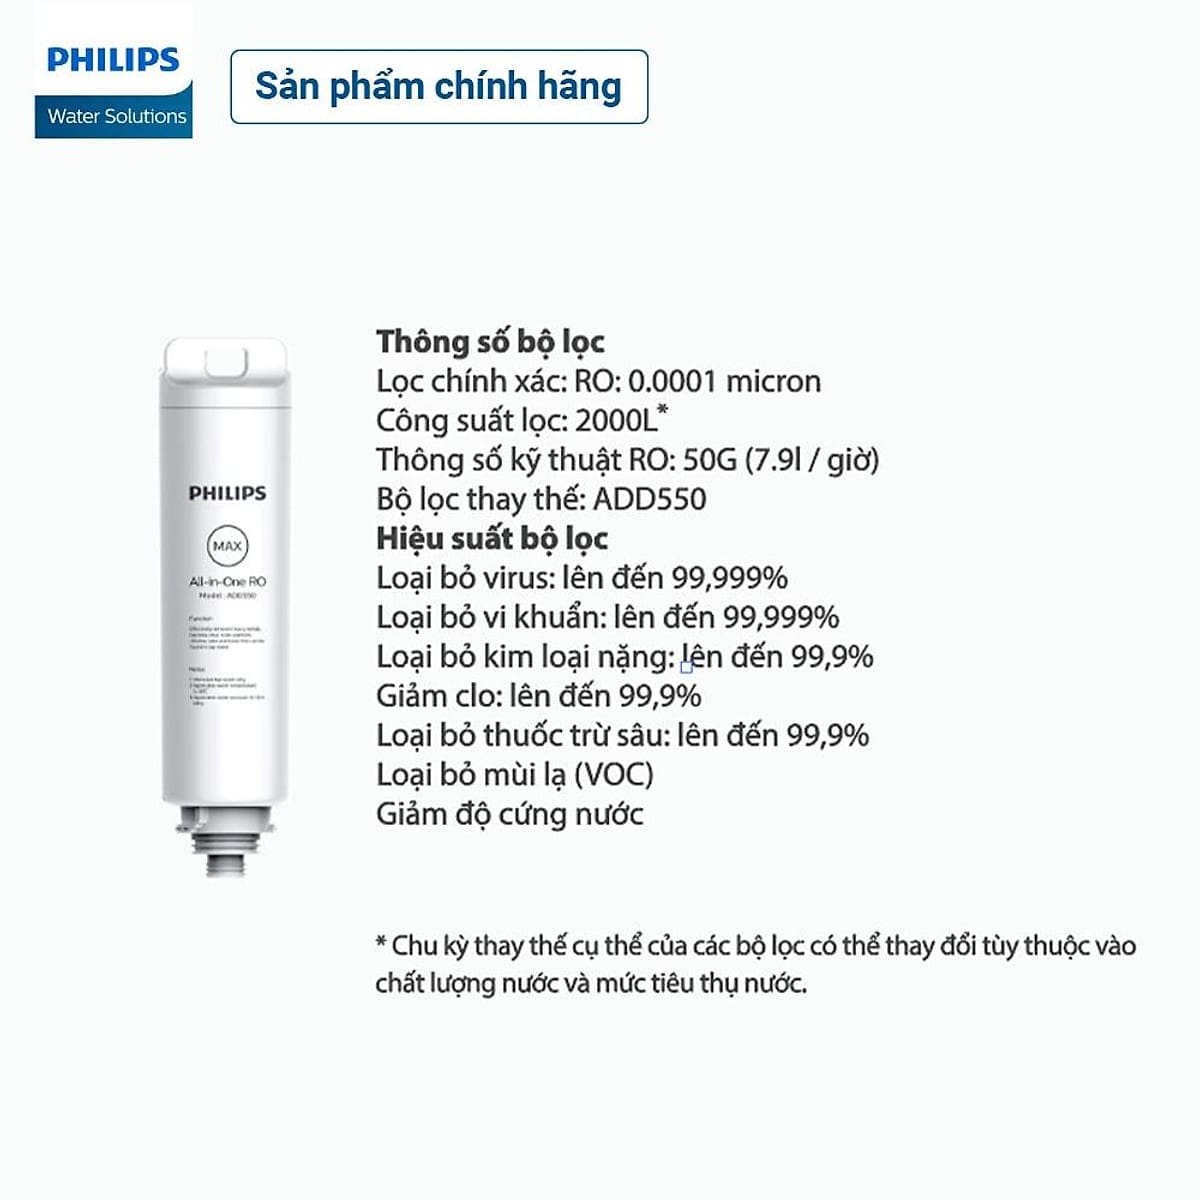 Lõi lọc Philips All-in-One ADD550 dành cho máy lọc nước RO để bàn ADD6910 10